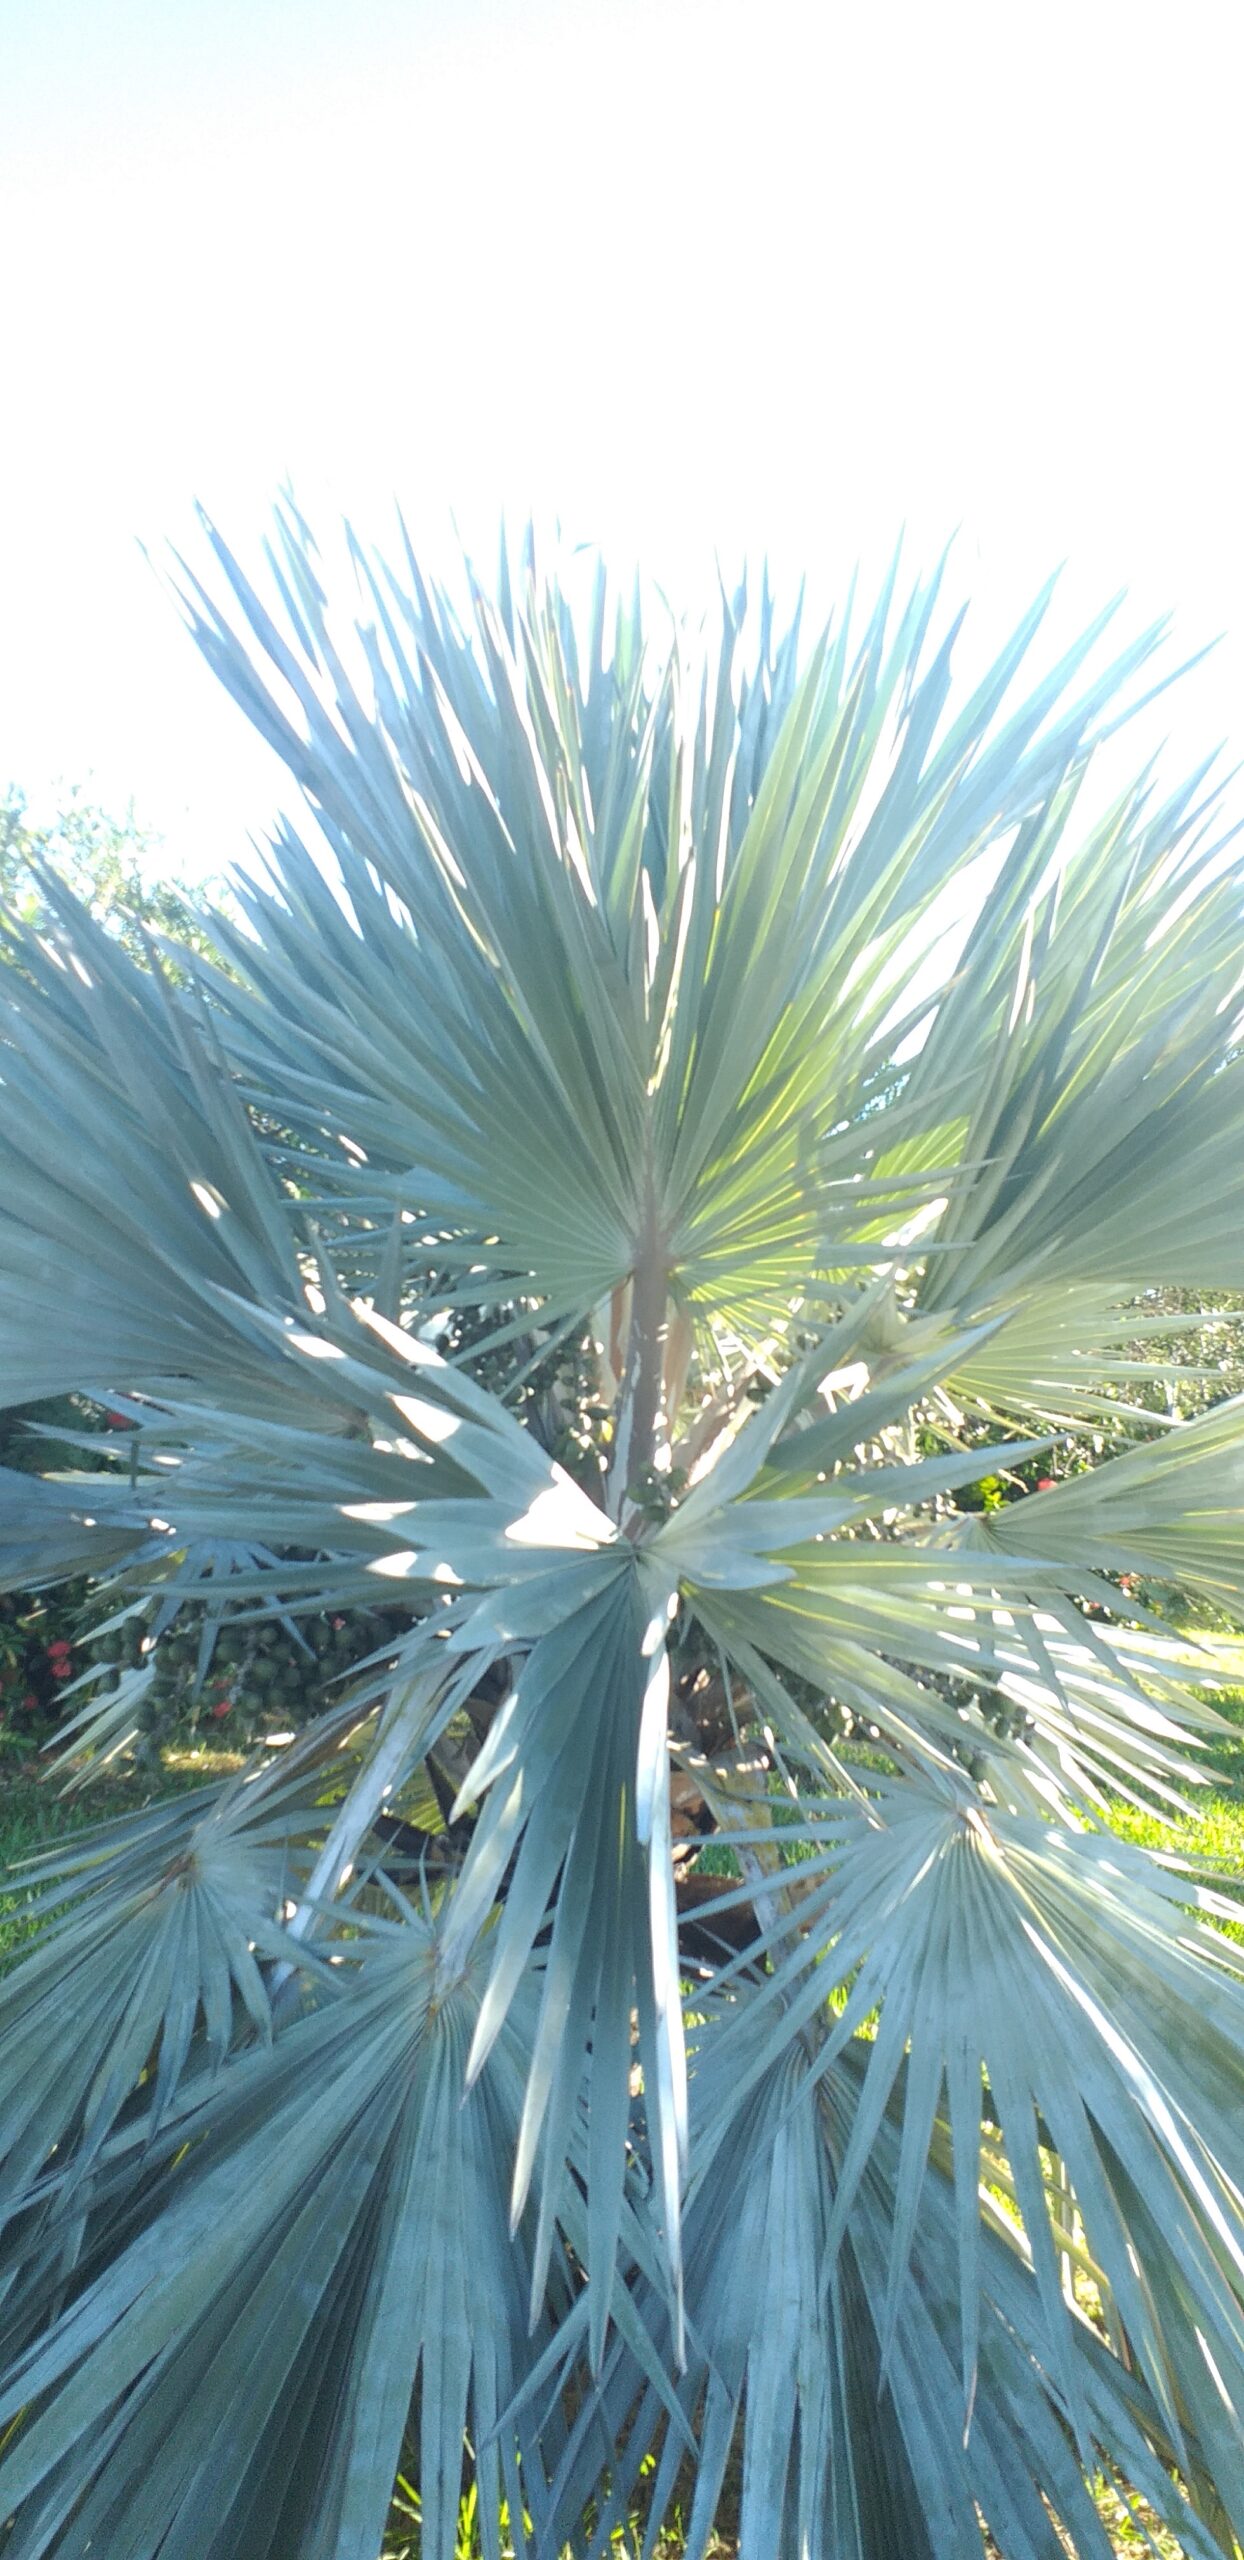 Bismarck Palm Tree | EDEN'S GARDEN